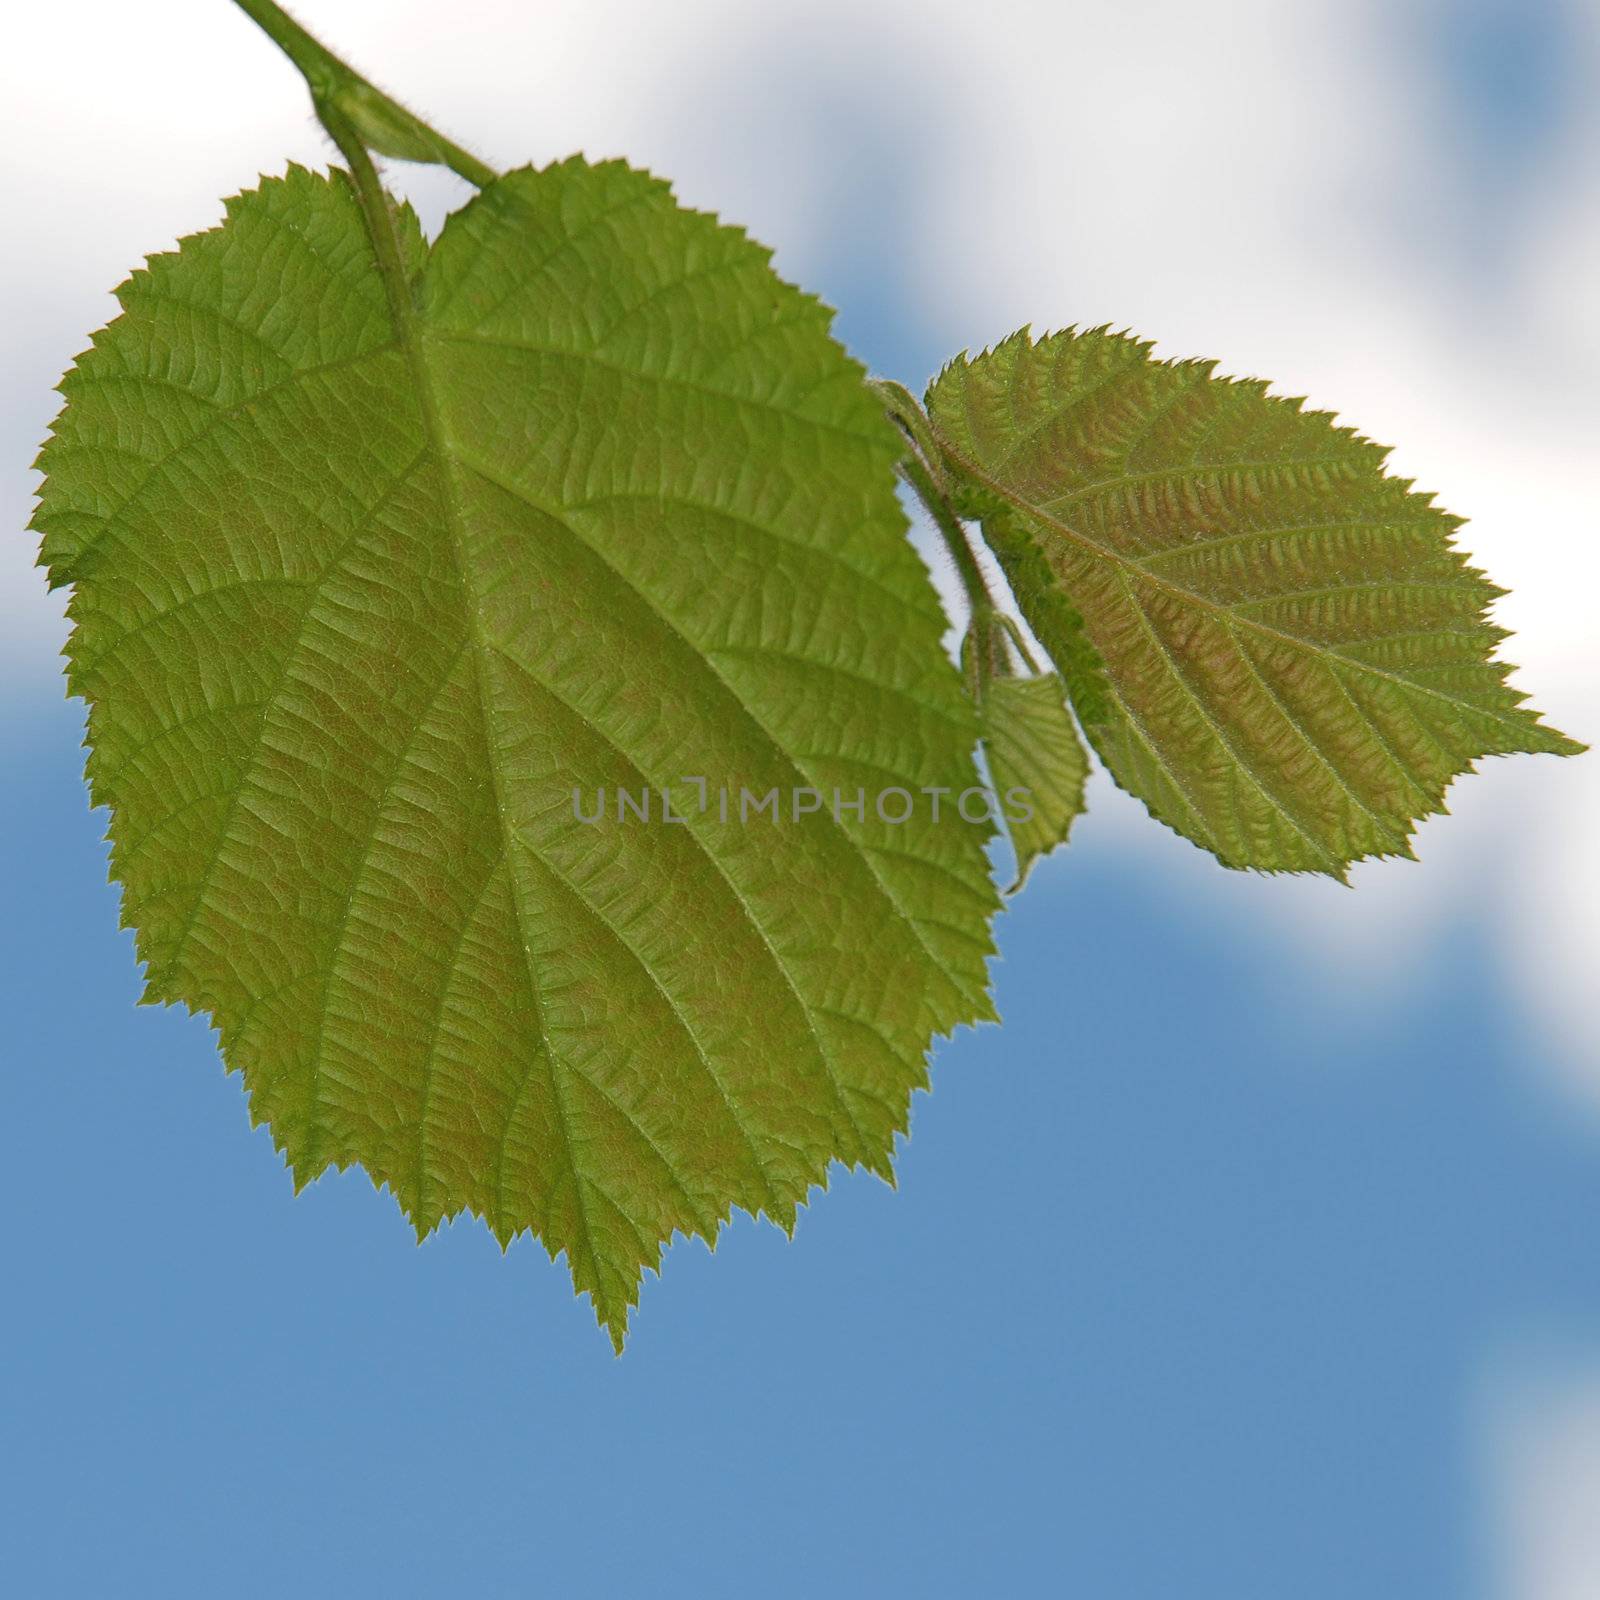 Green leaf on blue sky background